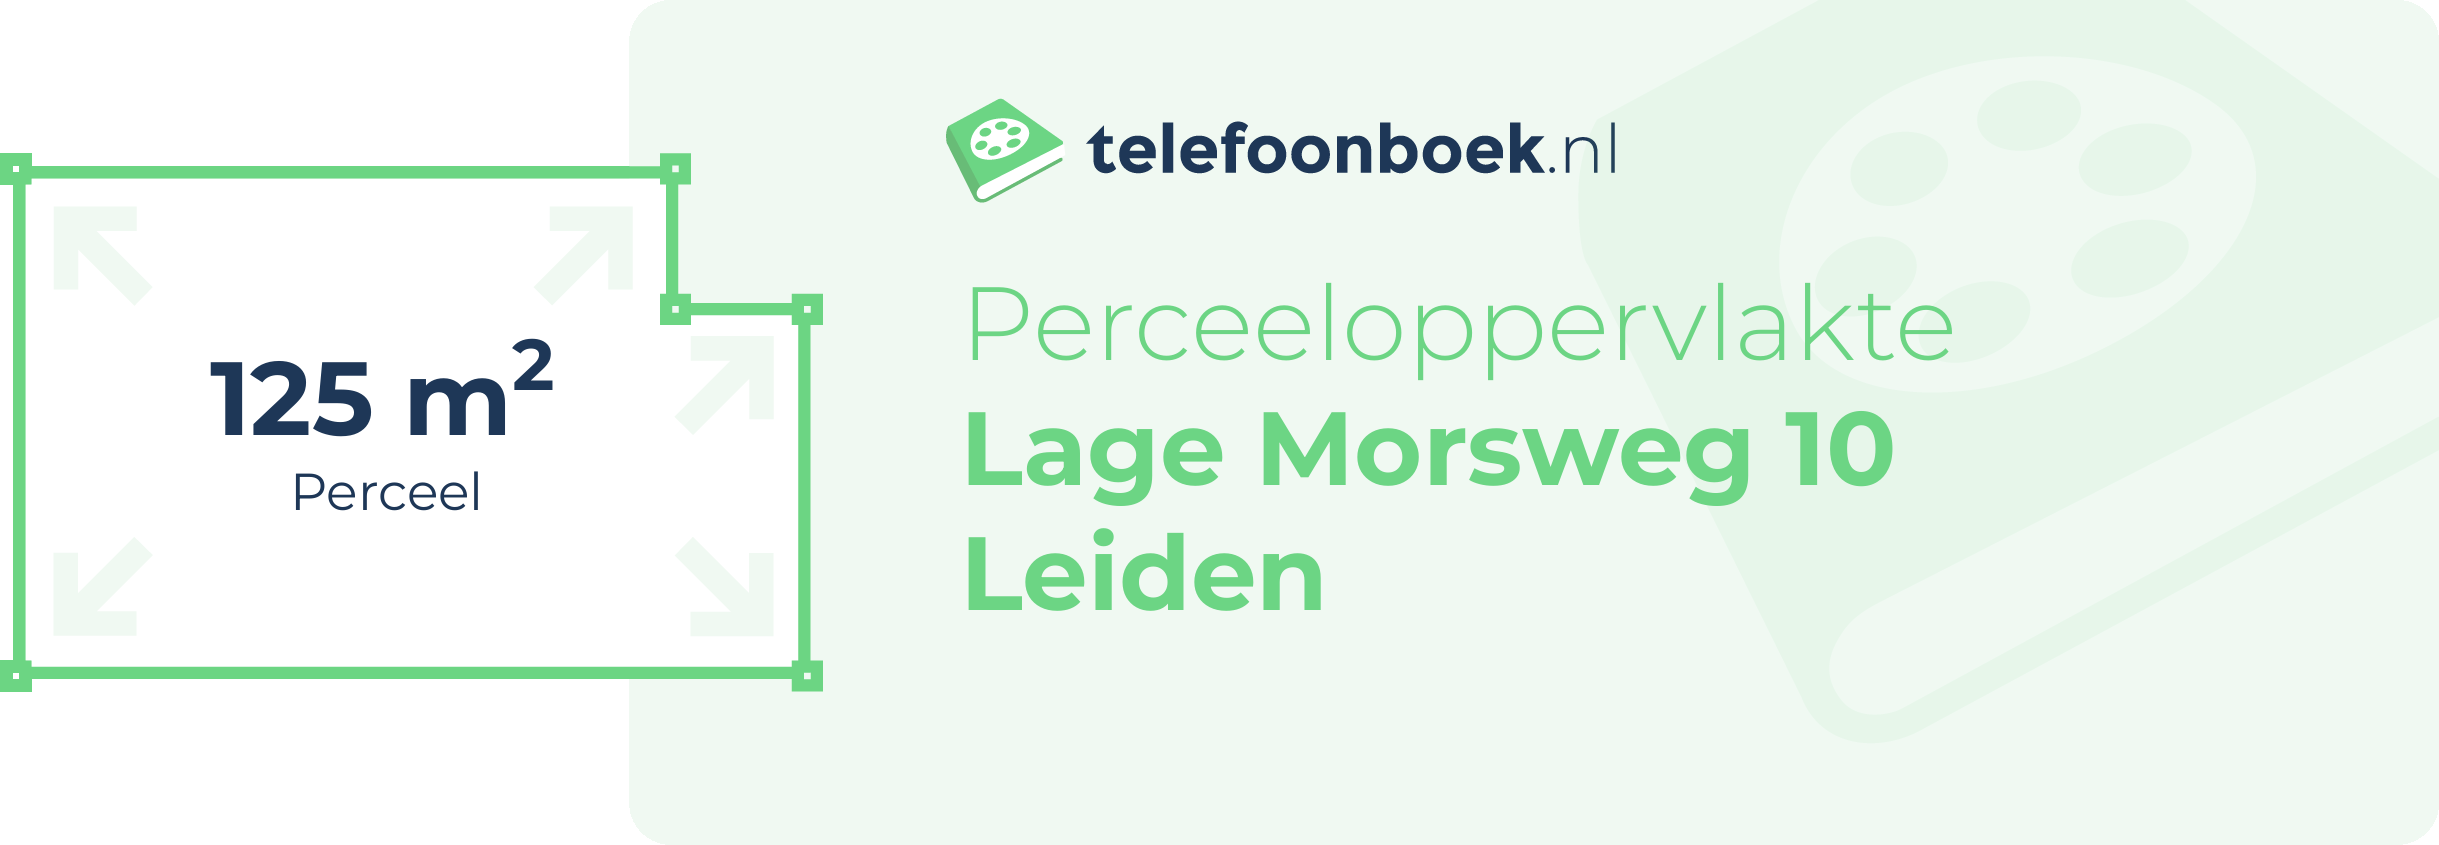 Perceeloppervlakte Lage Morsweg 10 Leiden